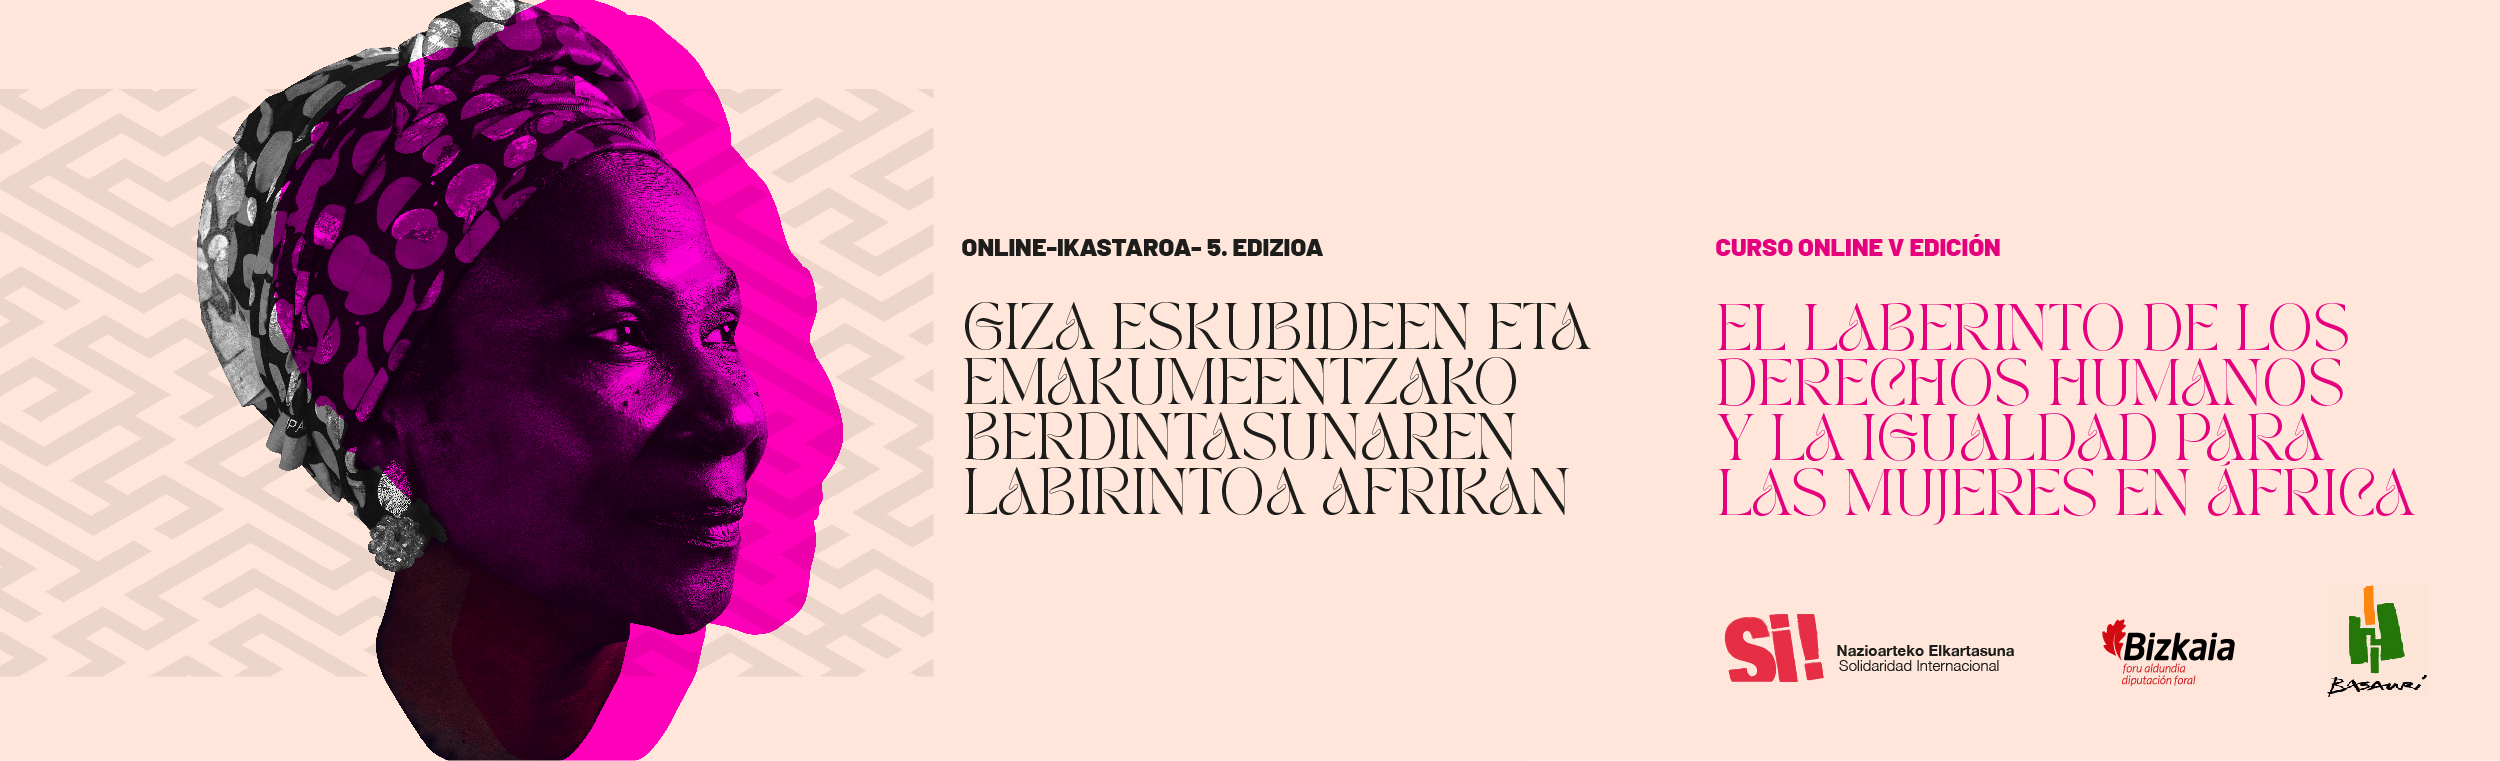 El laberinto de los Derechos Humanos y la igualdad para las mujeres en África – V Edición